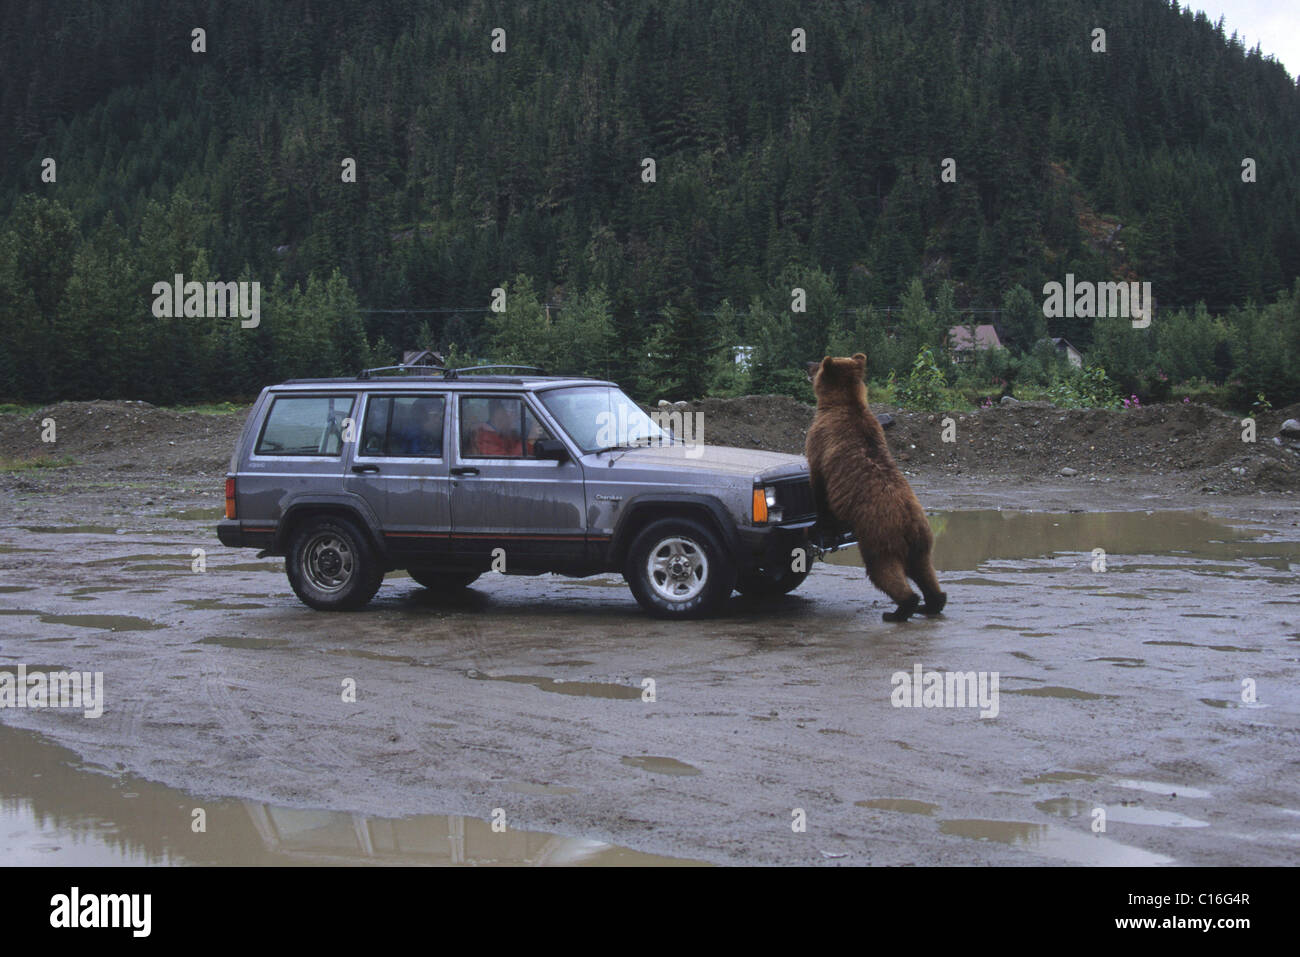 Oso grizzly (Ursus arctos horribilis) atacando a un coche, Alaska, EE.UU. Foto de stock